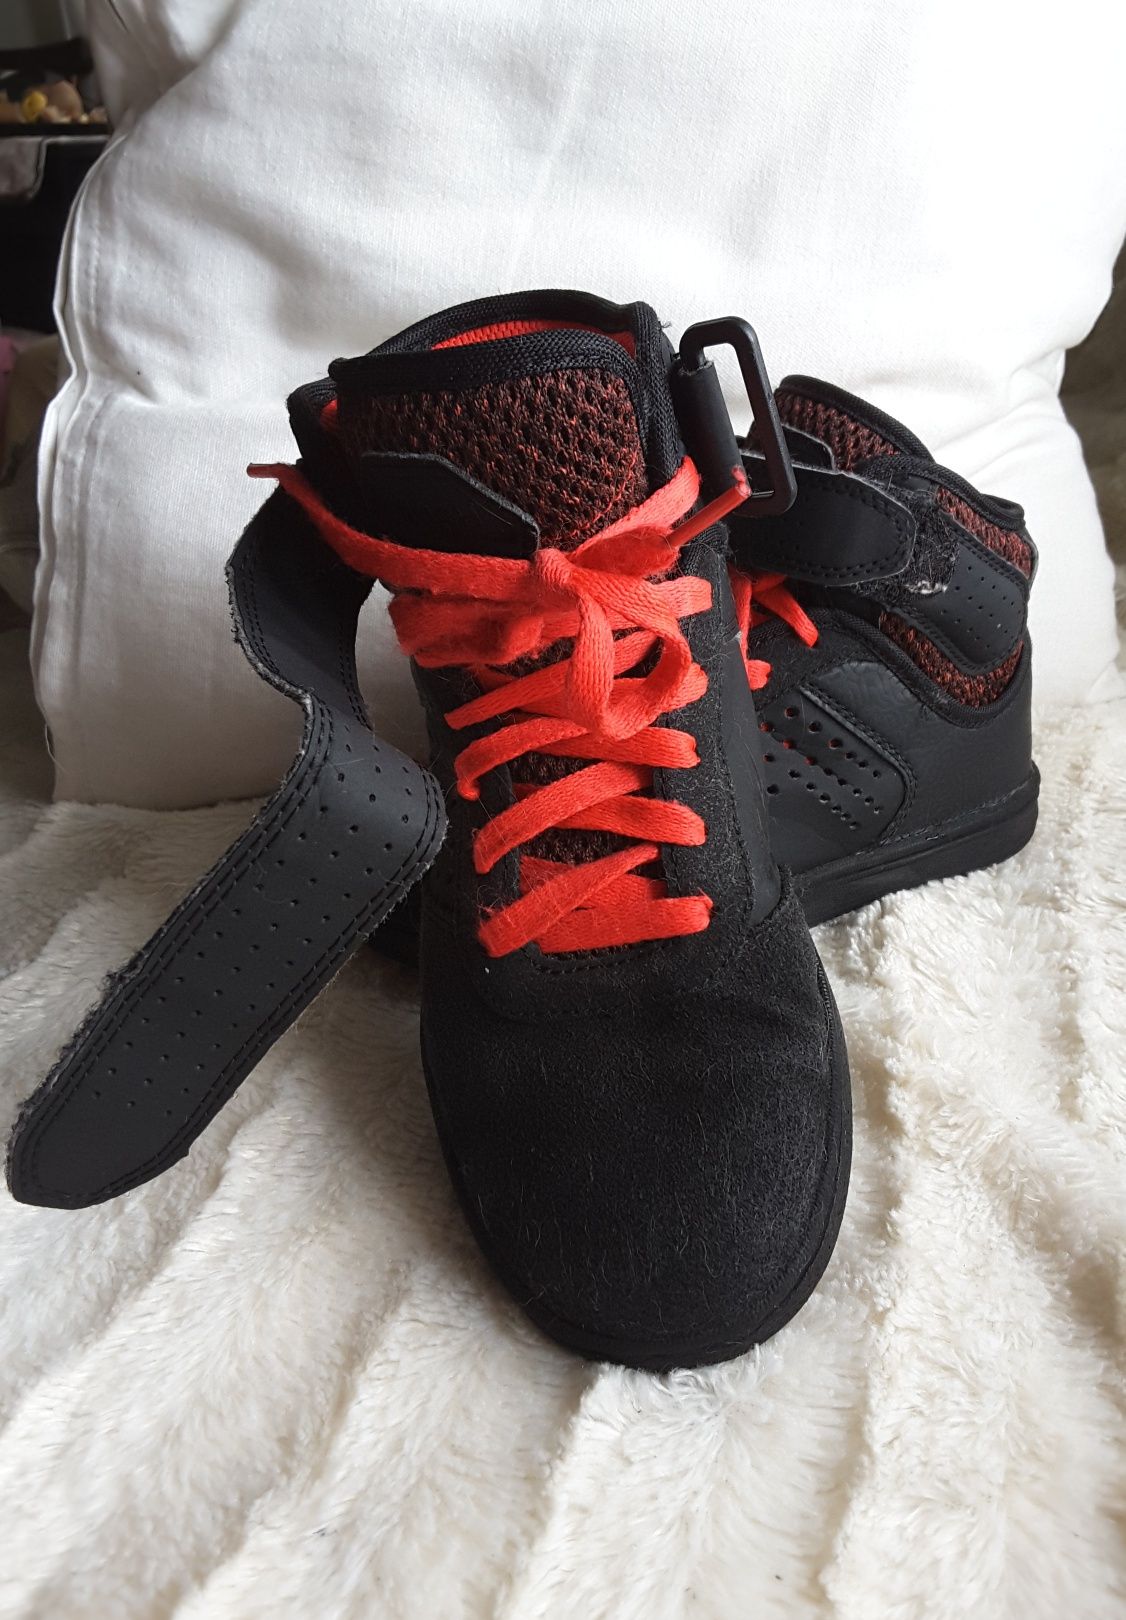 Botas de skate / caminhada / escoteiros - preto e vermelho - tam 34